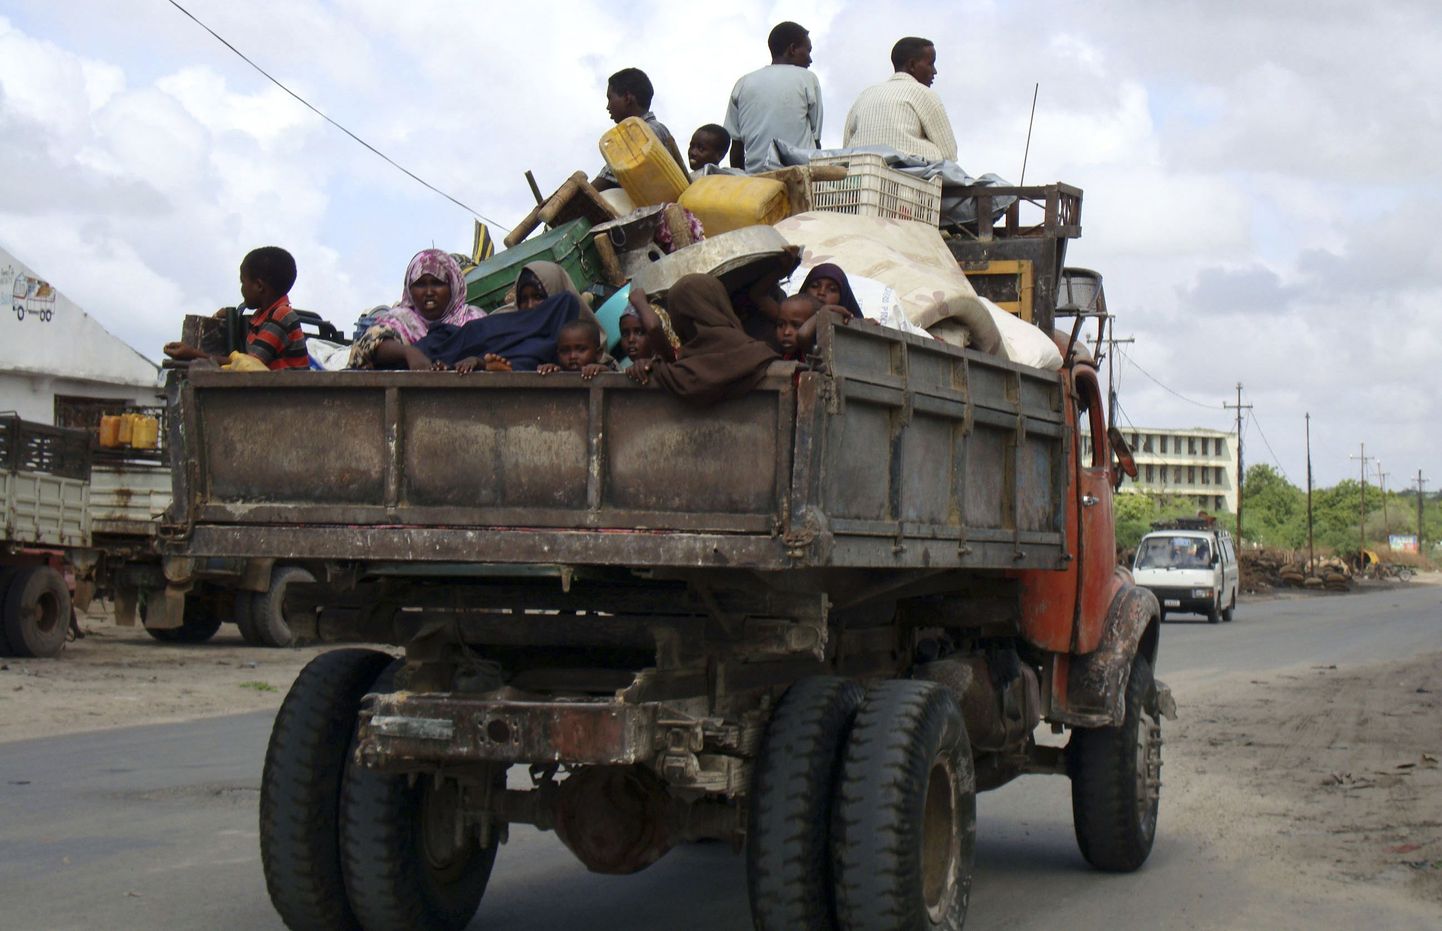 Somaalia tsiviilelanikud põgenemas Muqdishos puhkenud lahingute eest.